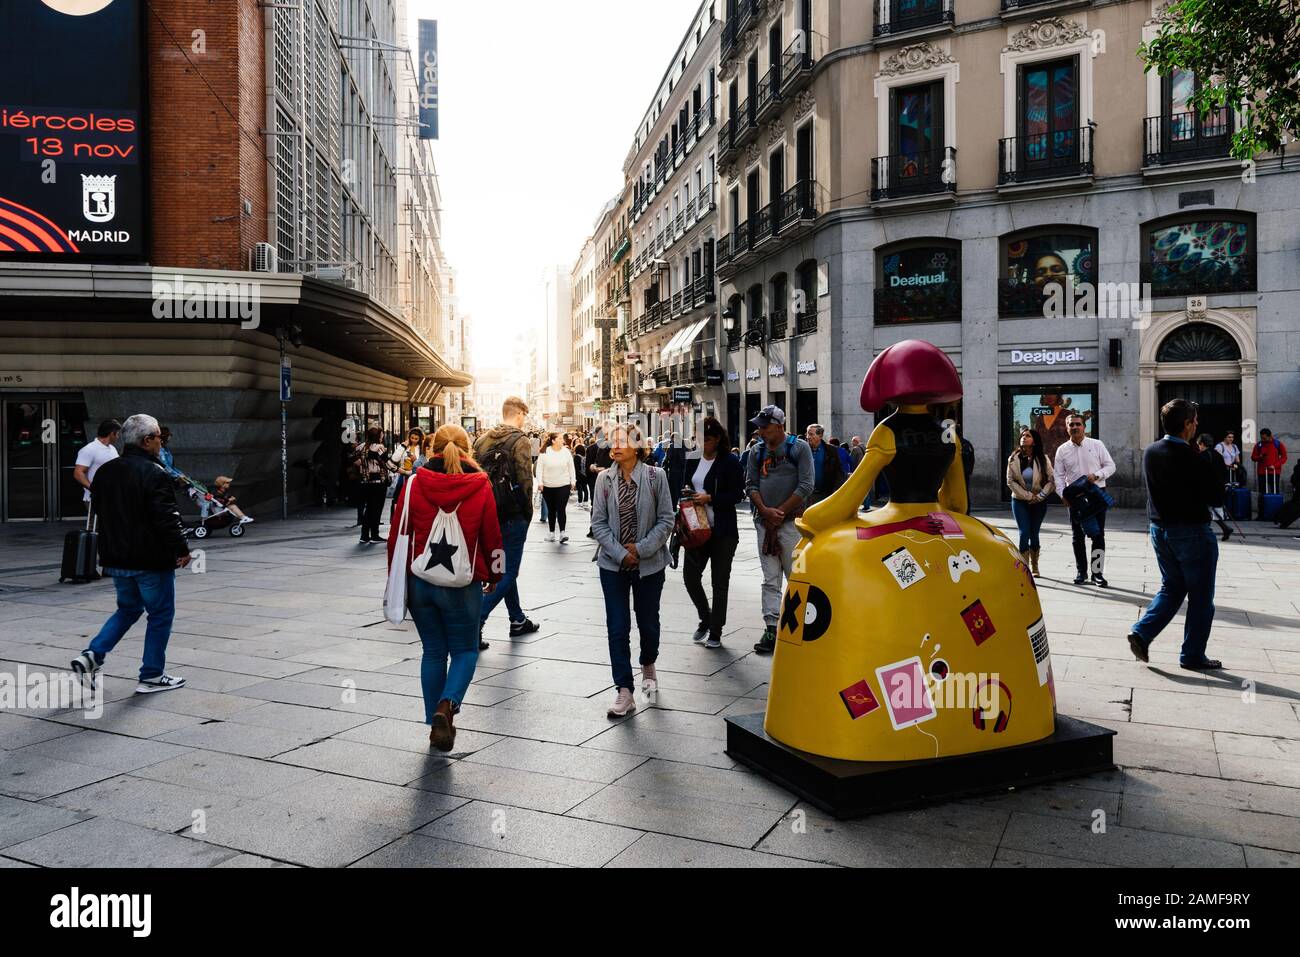 Madrid, Espagne - 1 novembre 2019: Les gens de la place Callao et de la rue commerciale Preciados avec lumière du soleil sur fond. Madrid, Espagne Banque D'Images